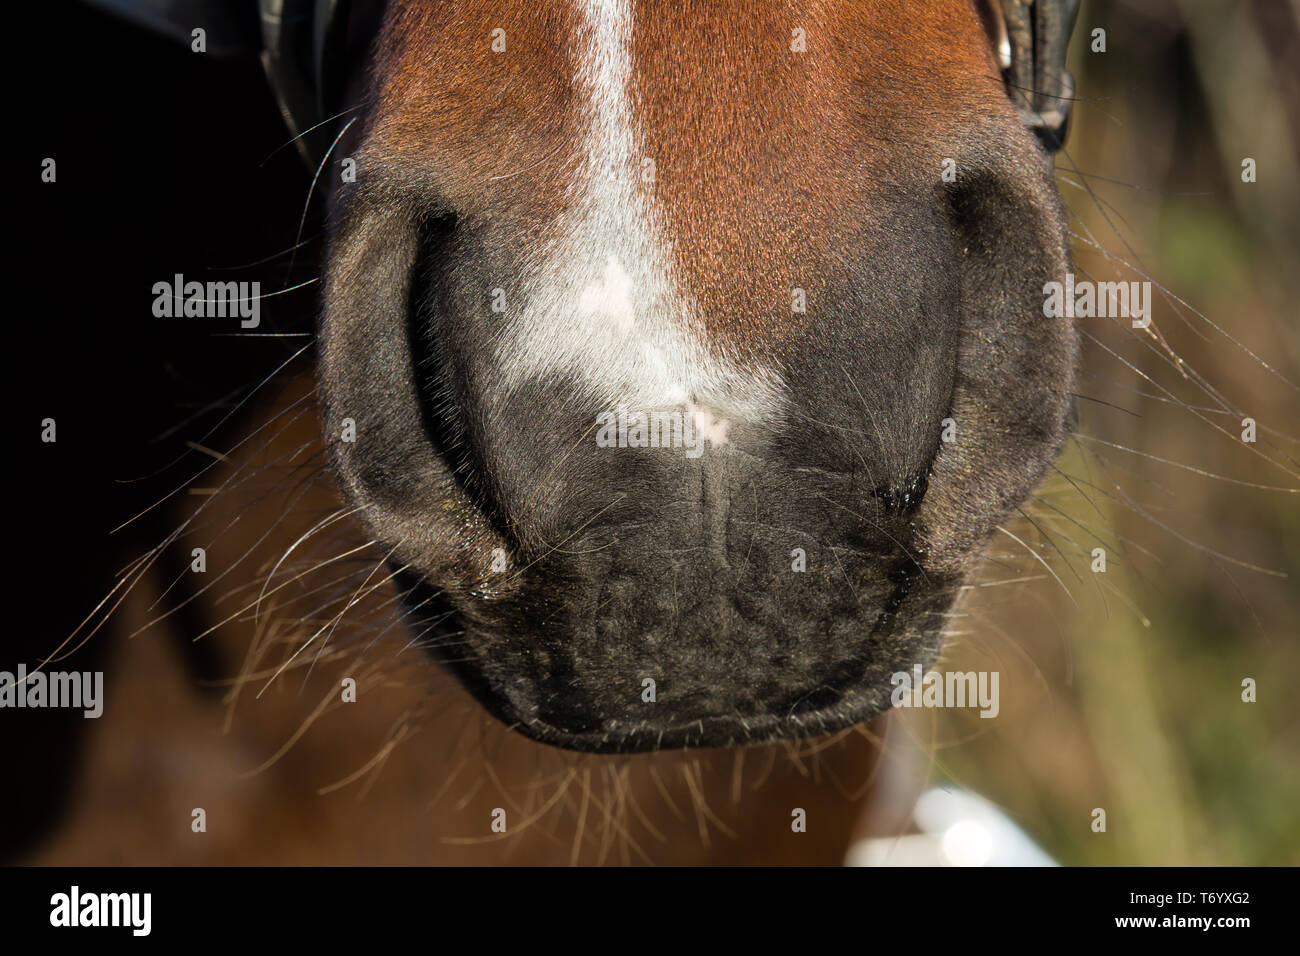 Las fosas nasales de caballos Foto de stock